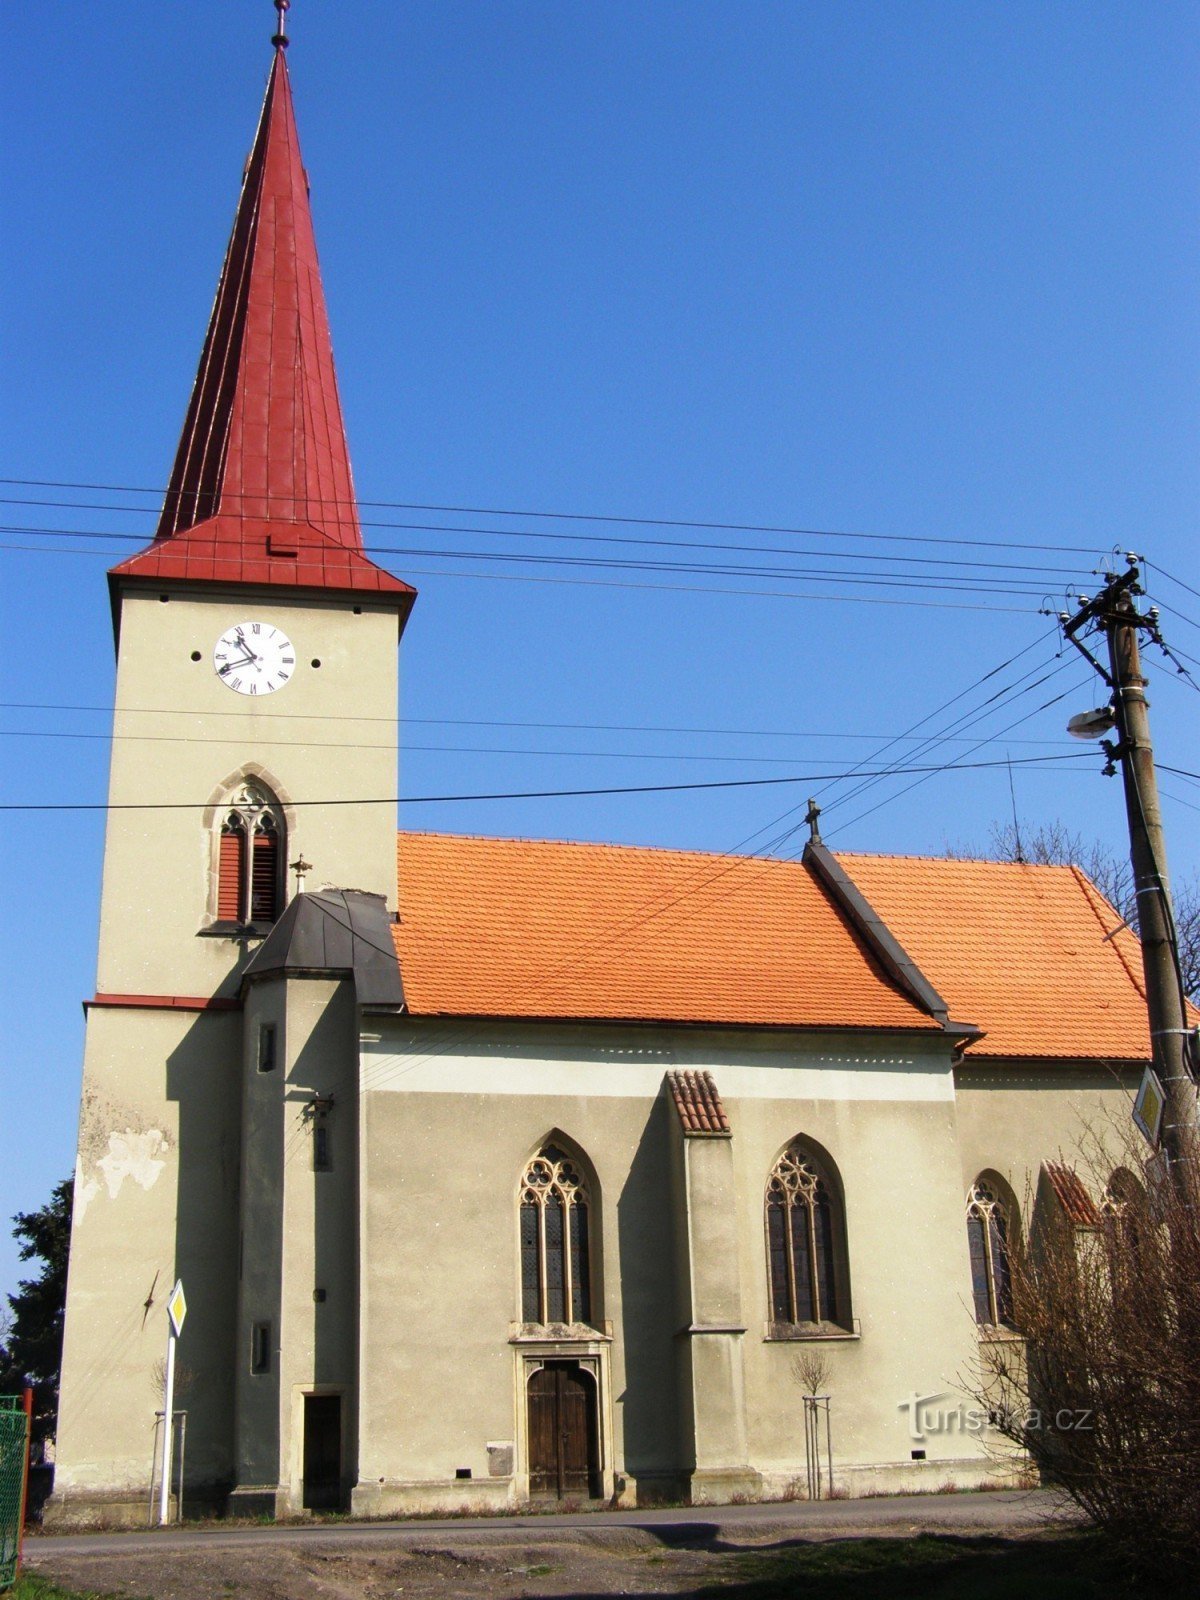 Kunětice - kirken St. Bartholomew